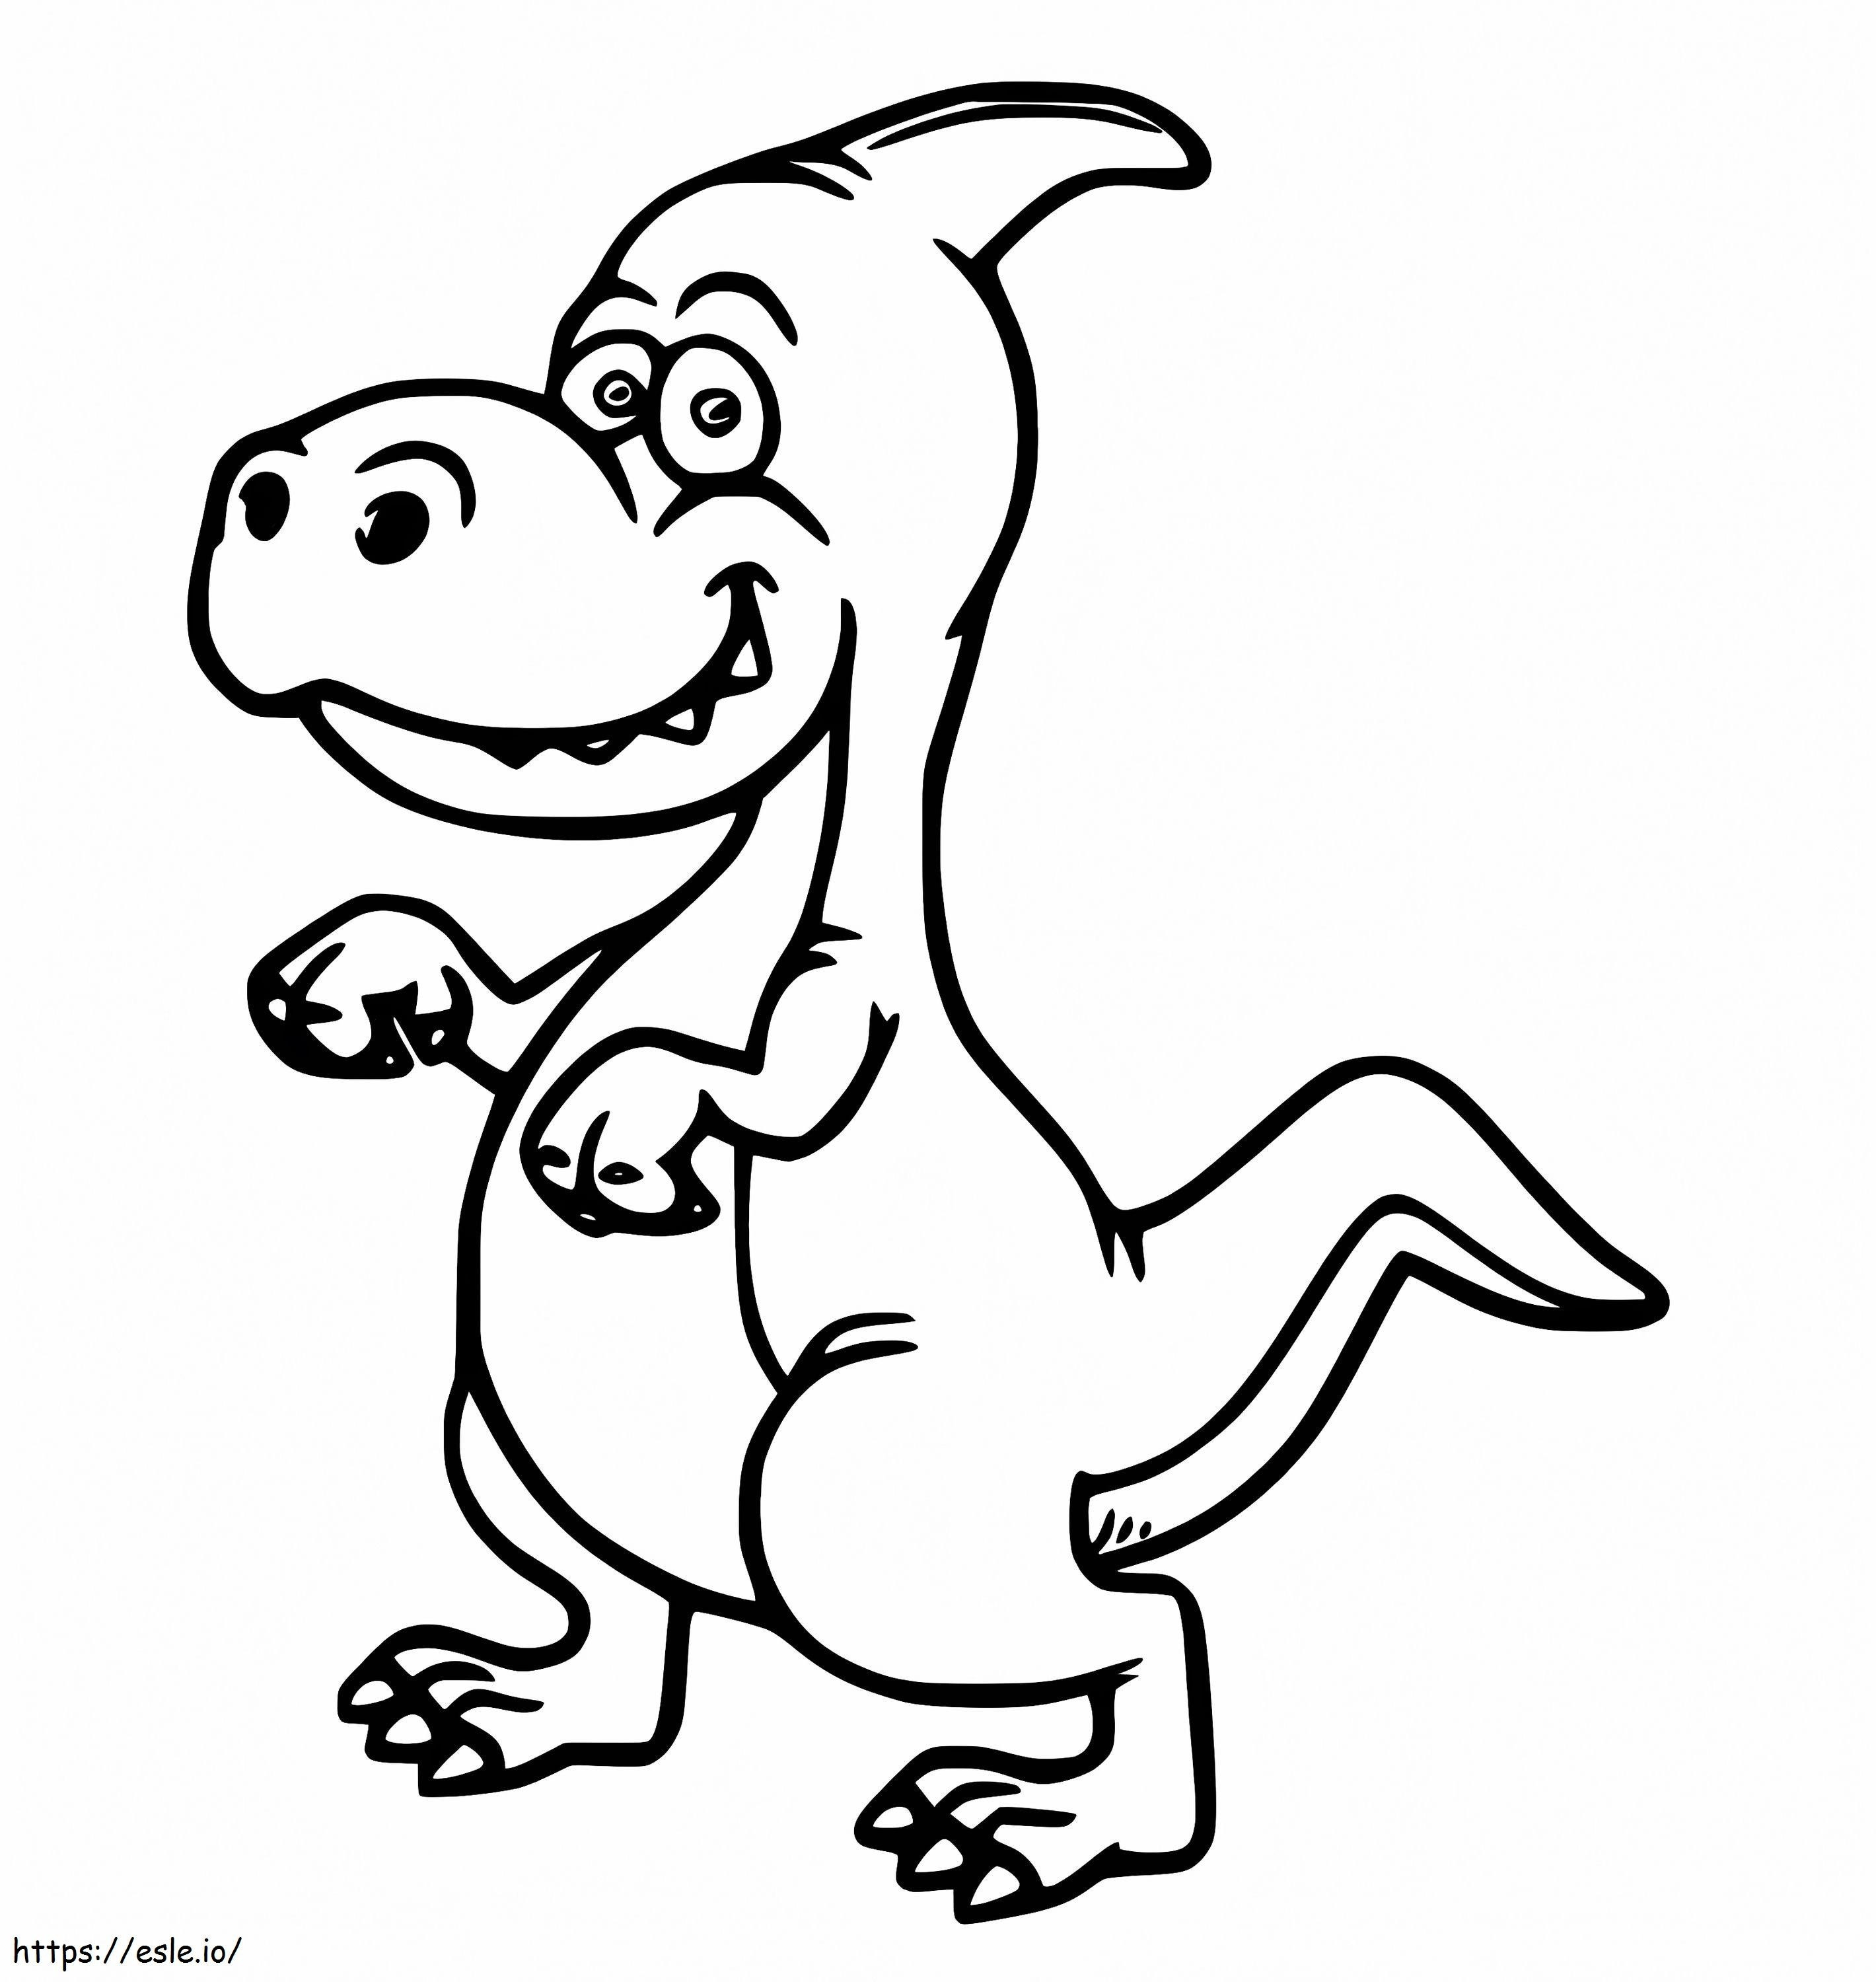 Desen animat Parasaurolophus de colorat